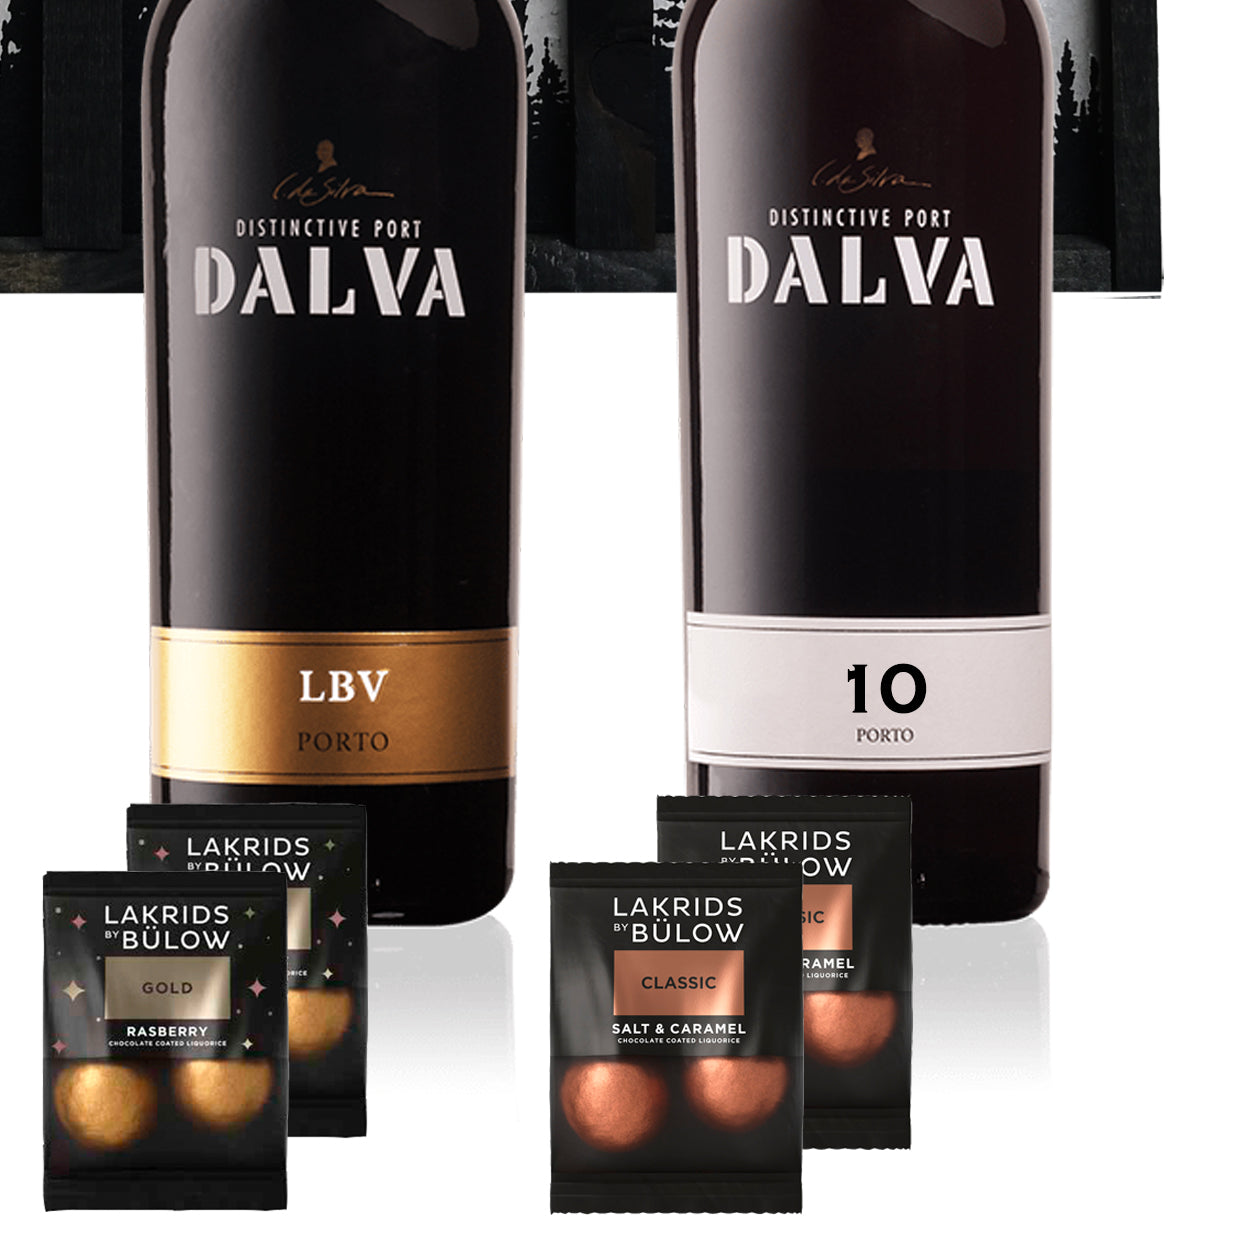 Adventskalender med fire flasker portvin fra Dalva. Du får en Davle Tawny, En Dalva Ruby, en LBV og en 10-års portvin. Derudover gemmer sig også lækre chokolader fra Lakrids by Bülow